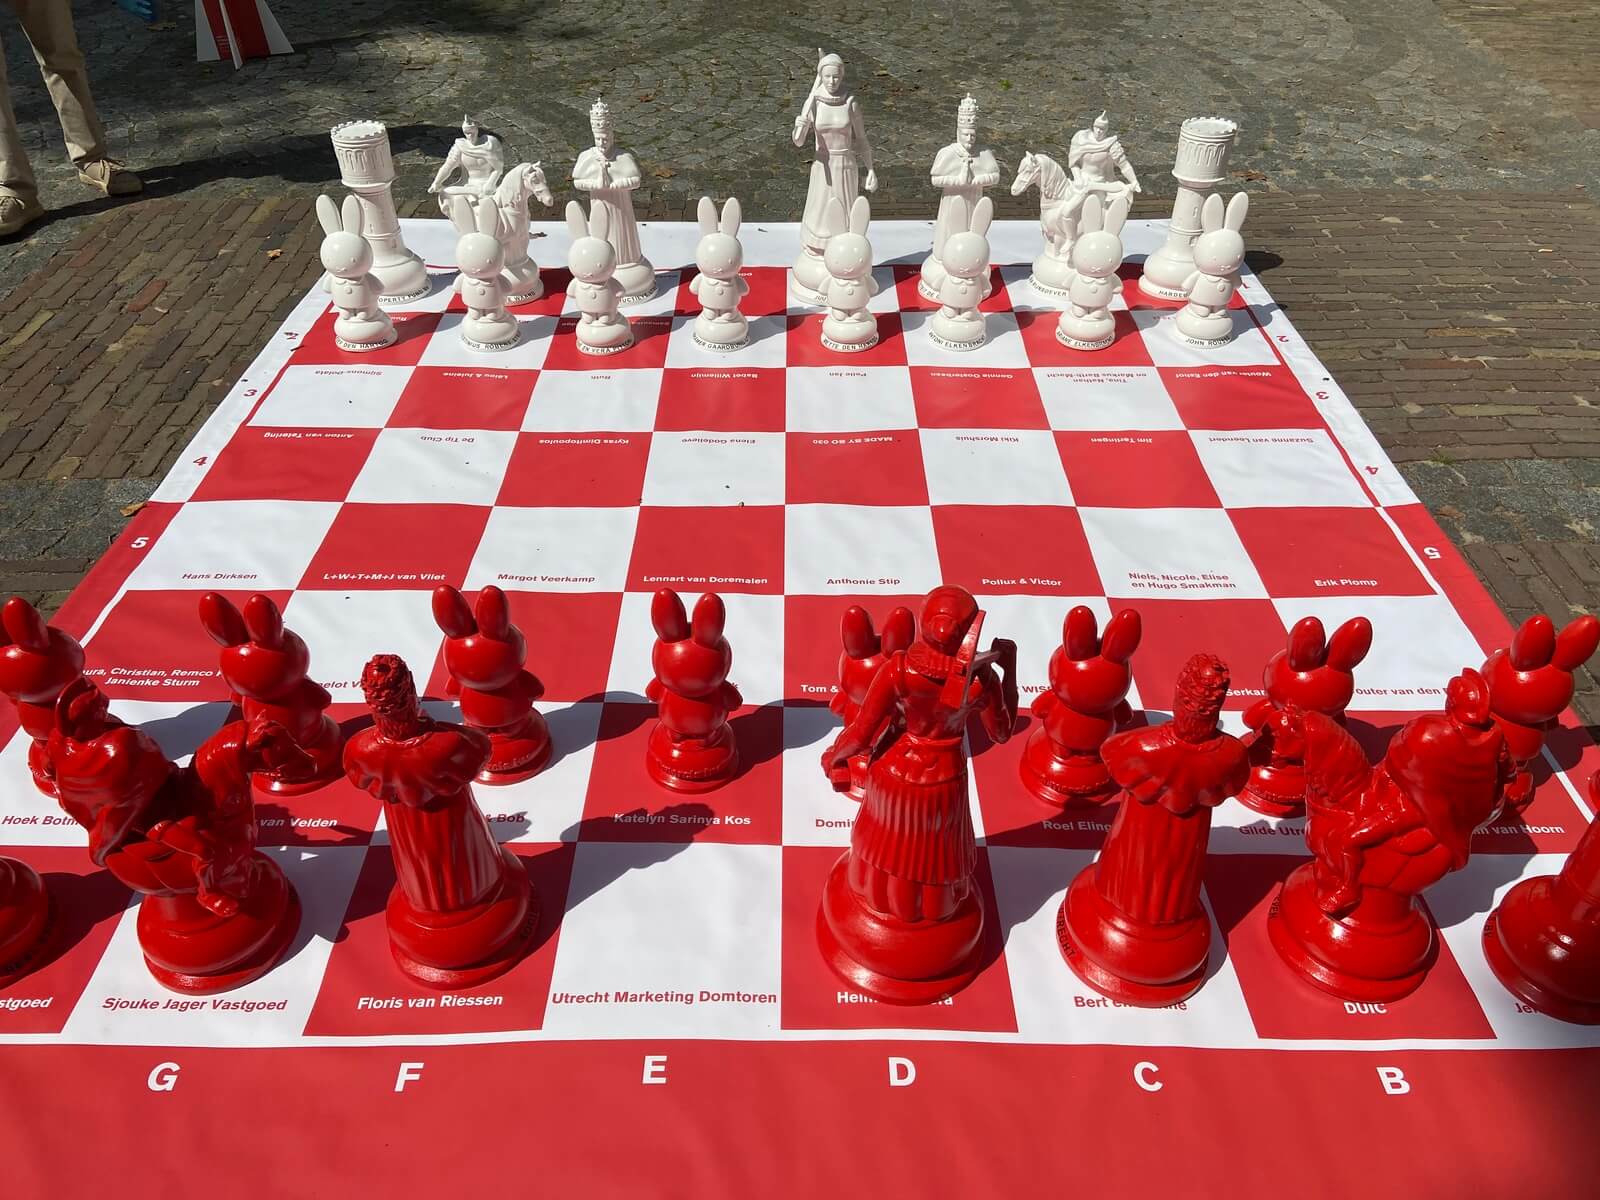 Let op Aanleg lekken Utrecht heeft uniek groot schaakspel | Nieuws030 - Nieuws030